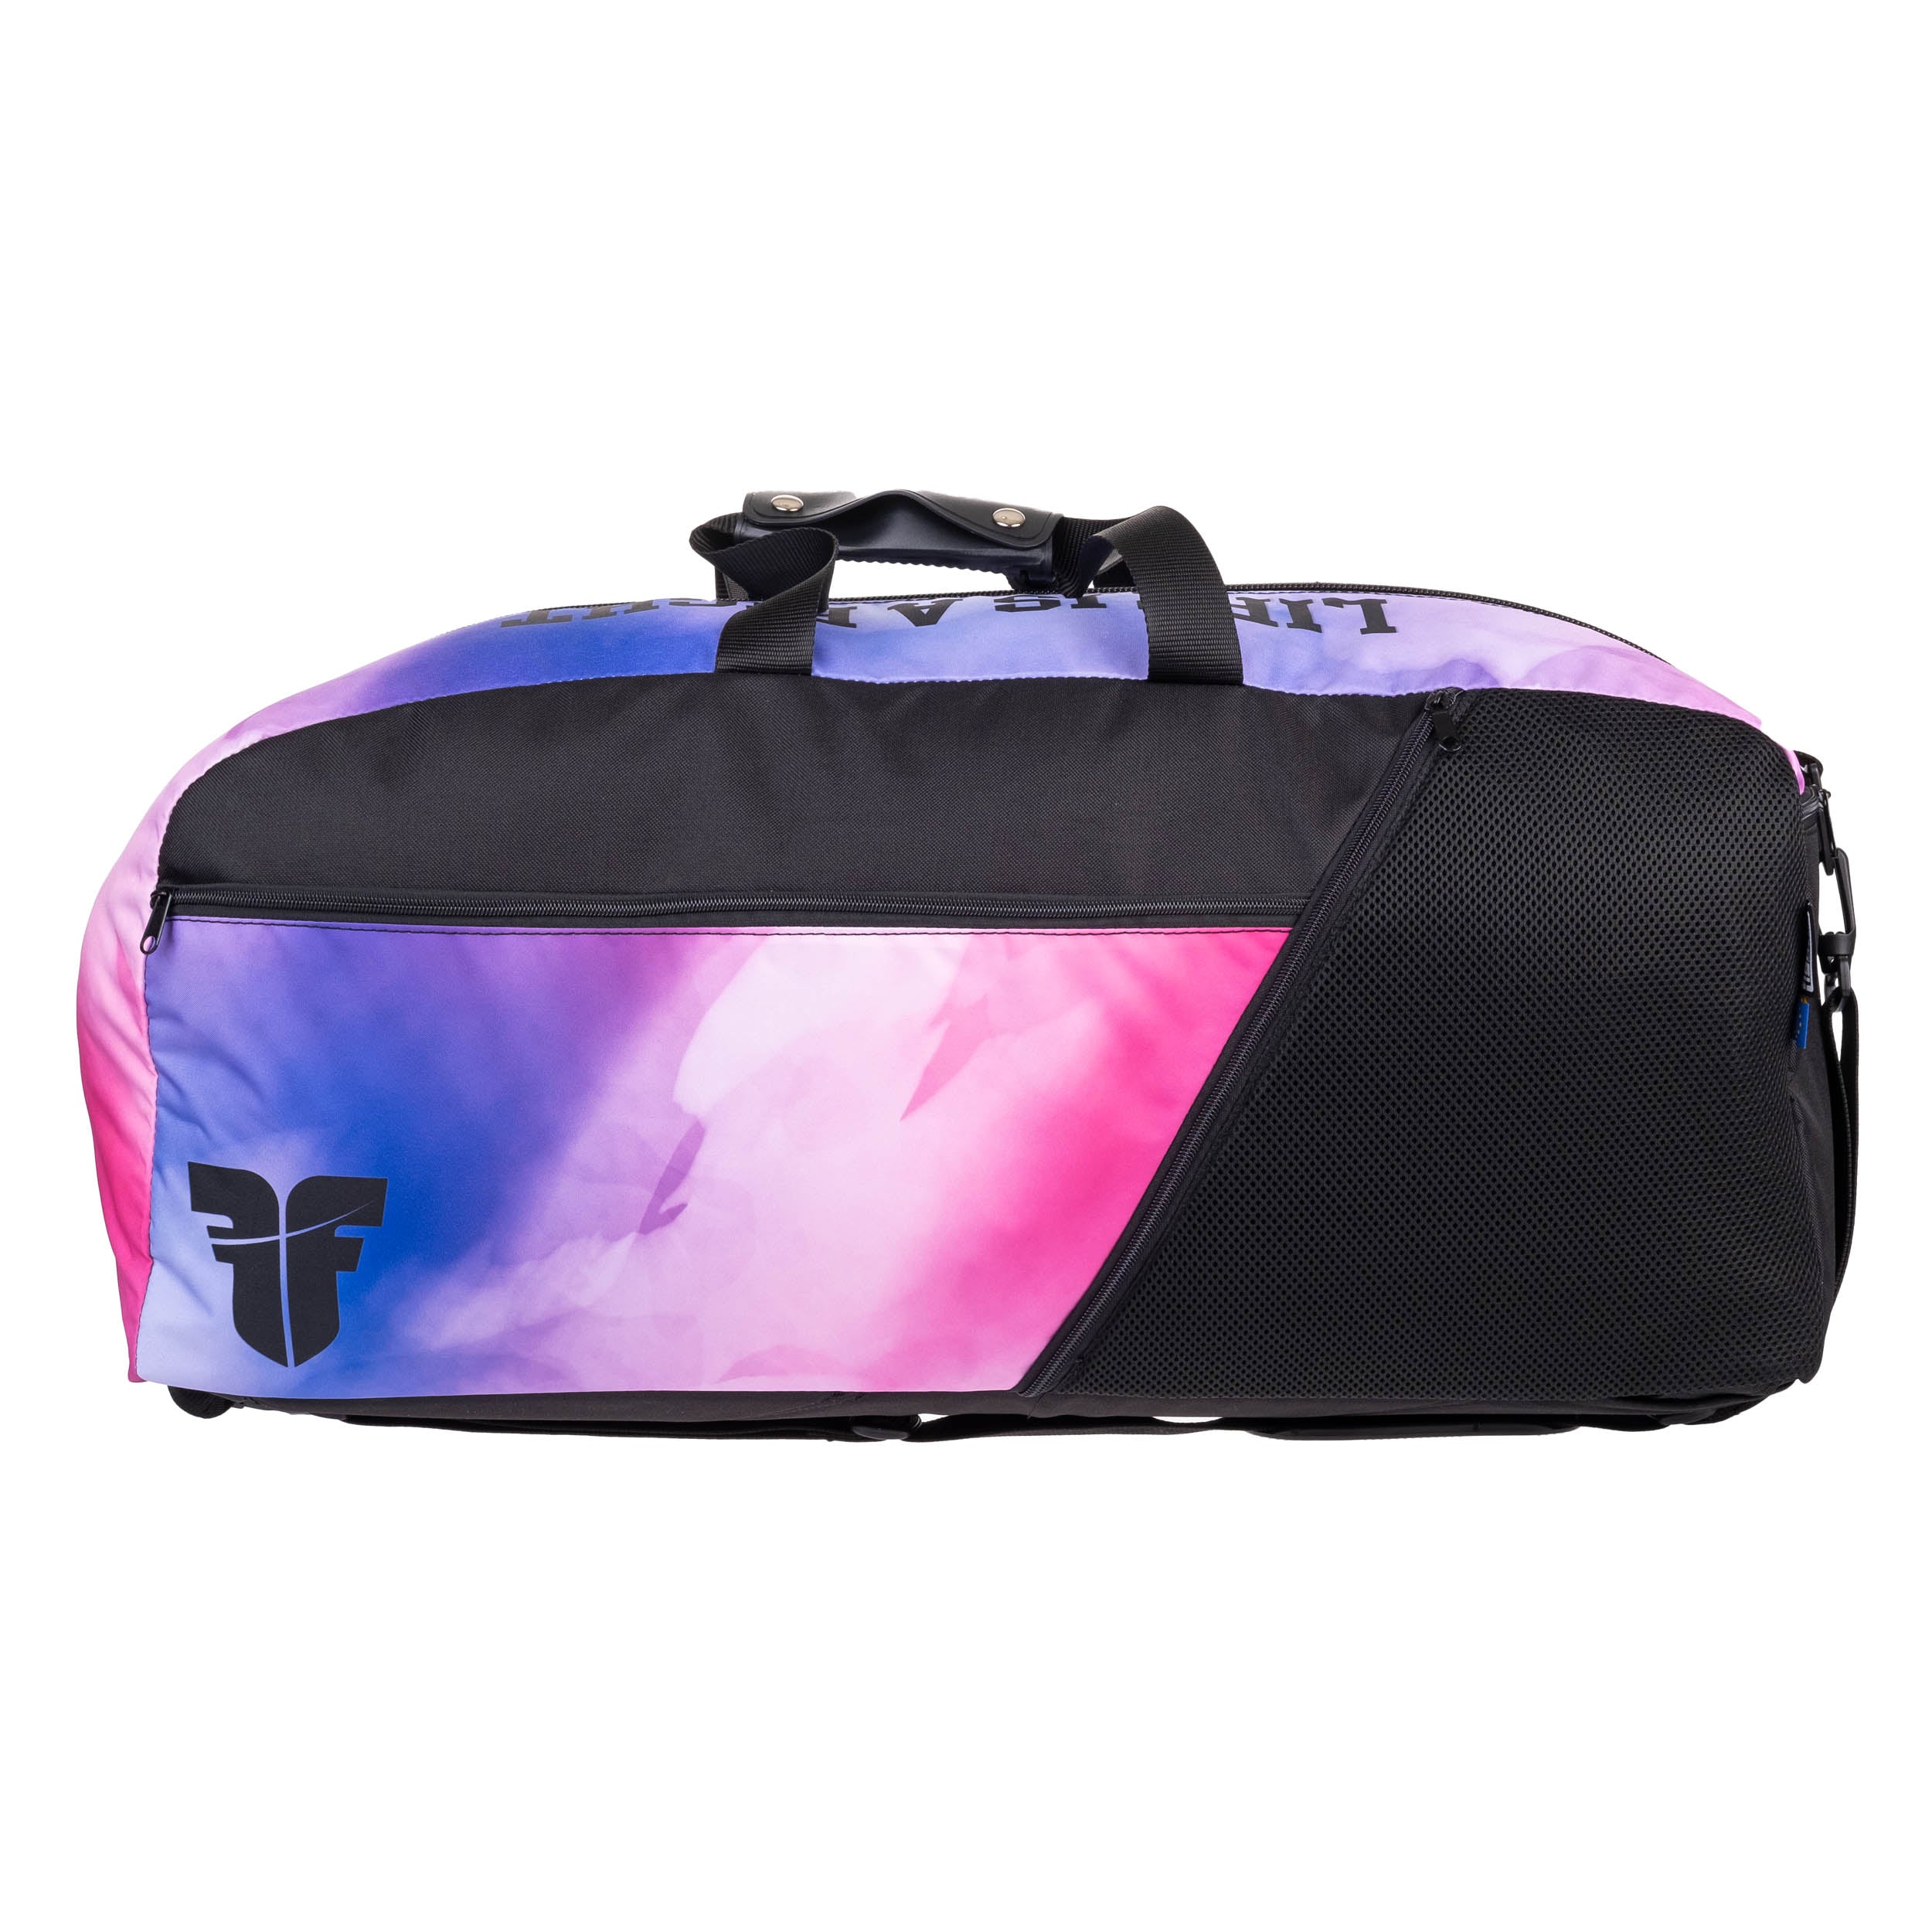 Fighter Sports Bag/Backpack - pink/purple ombré